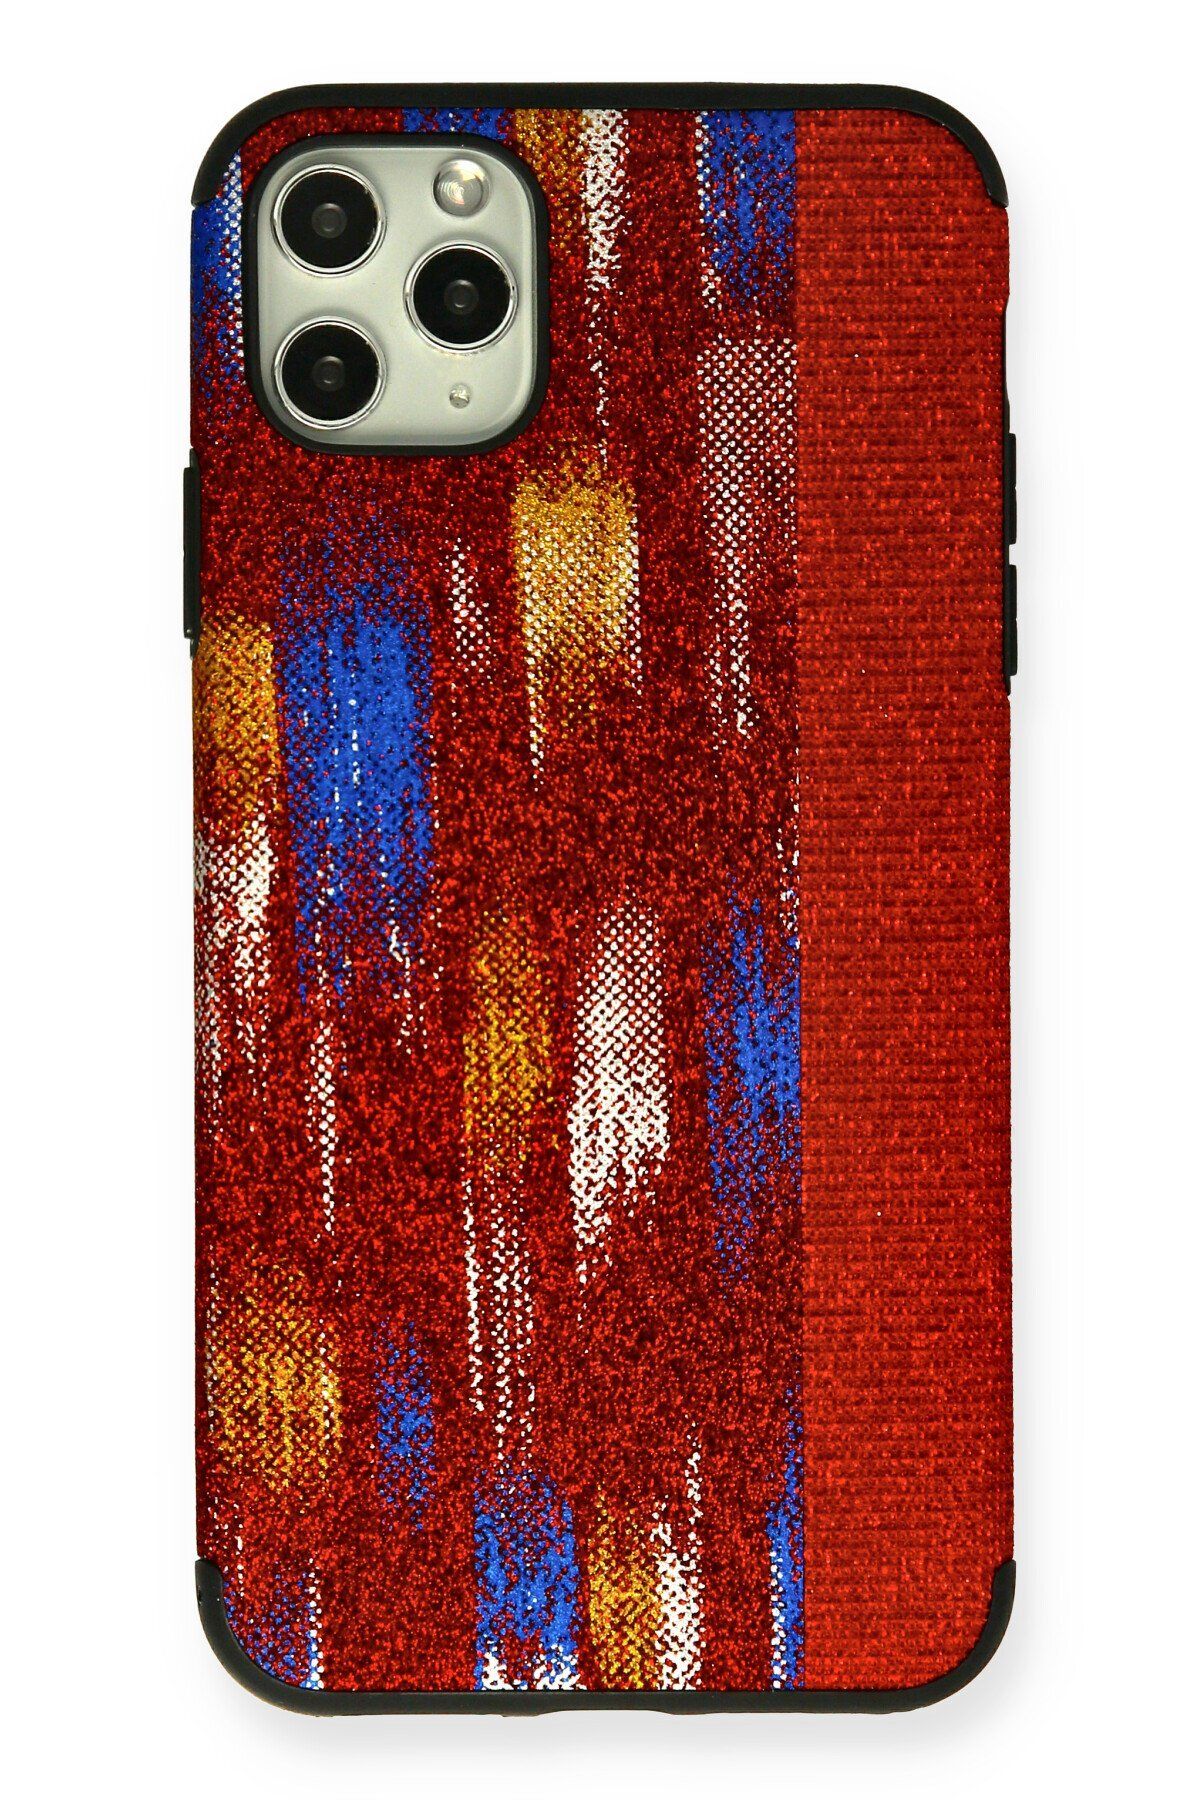 NewFace iPhone 11 Pro Kılıf Ottoman Simli Silikon - Kırmızı 374113